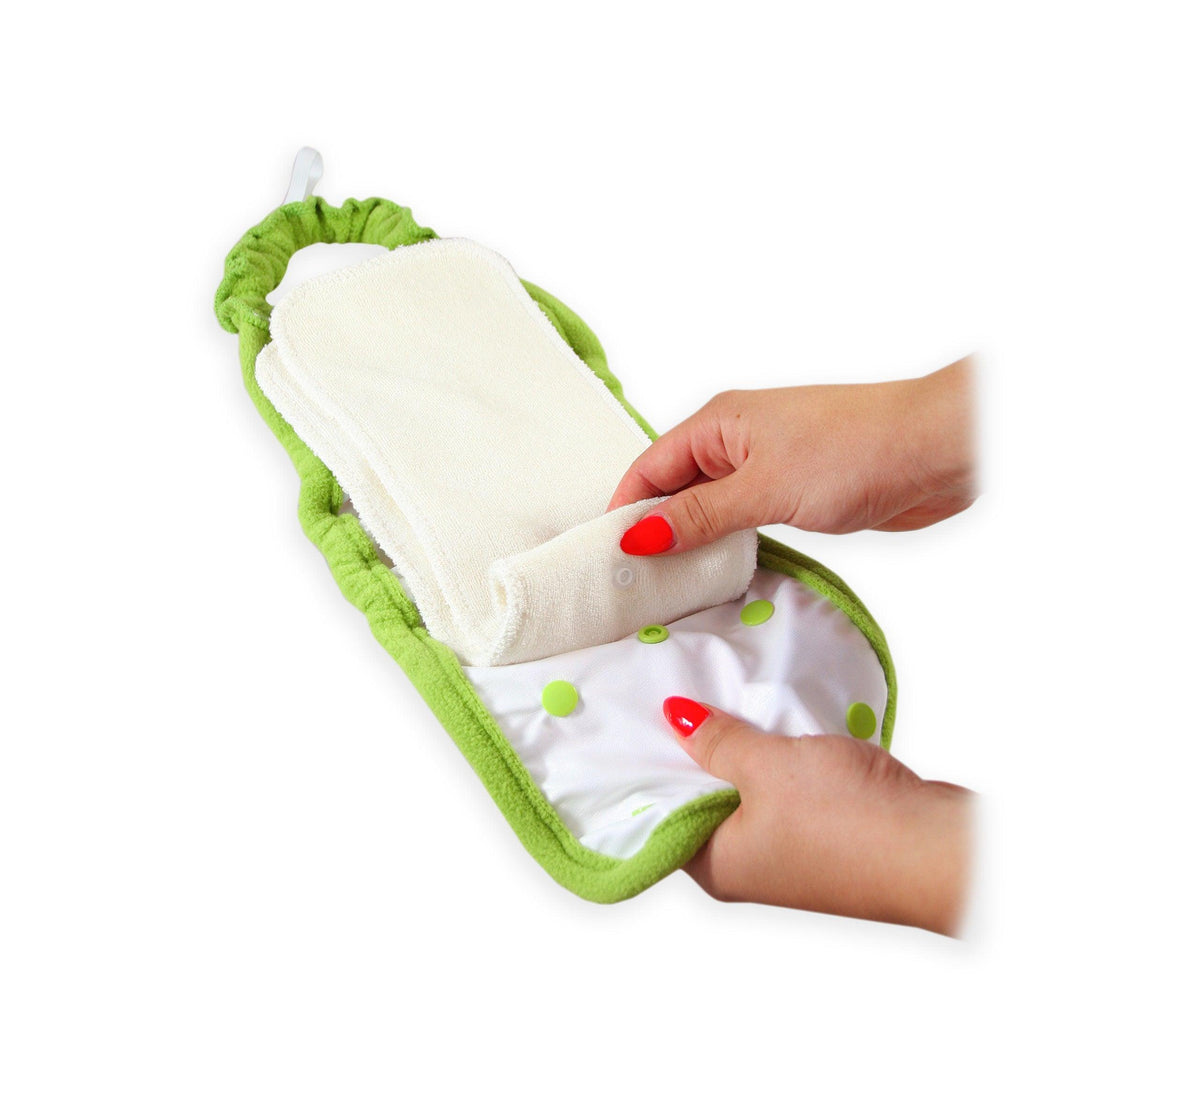 Petit Lulu | Couvre-couche Minimal Nappy pour hygiène naturelle infantile | Geckos - Petit Lulu